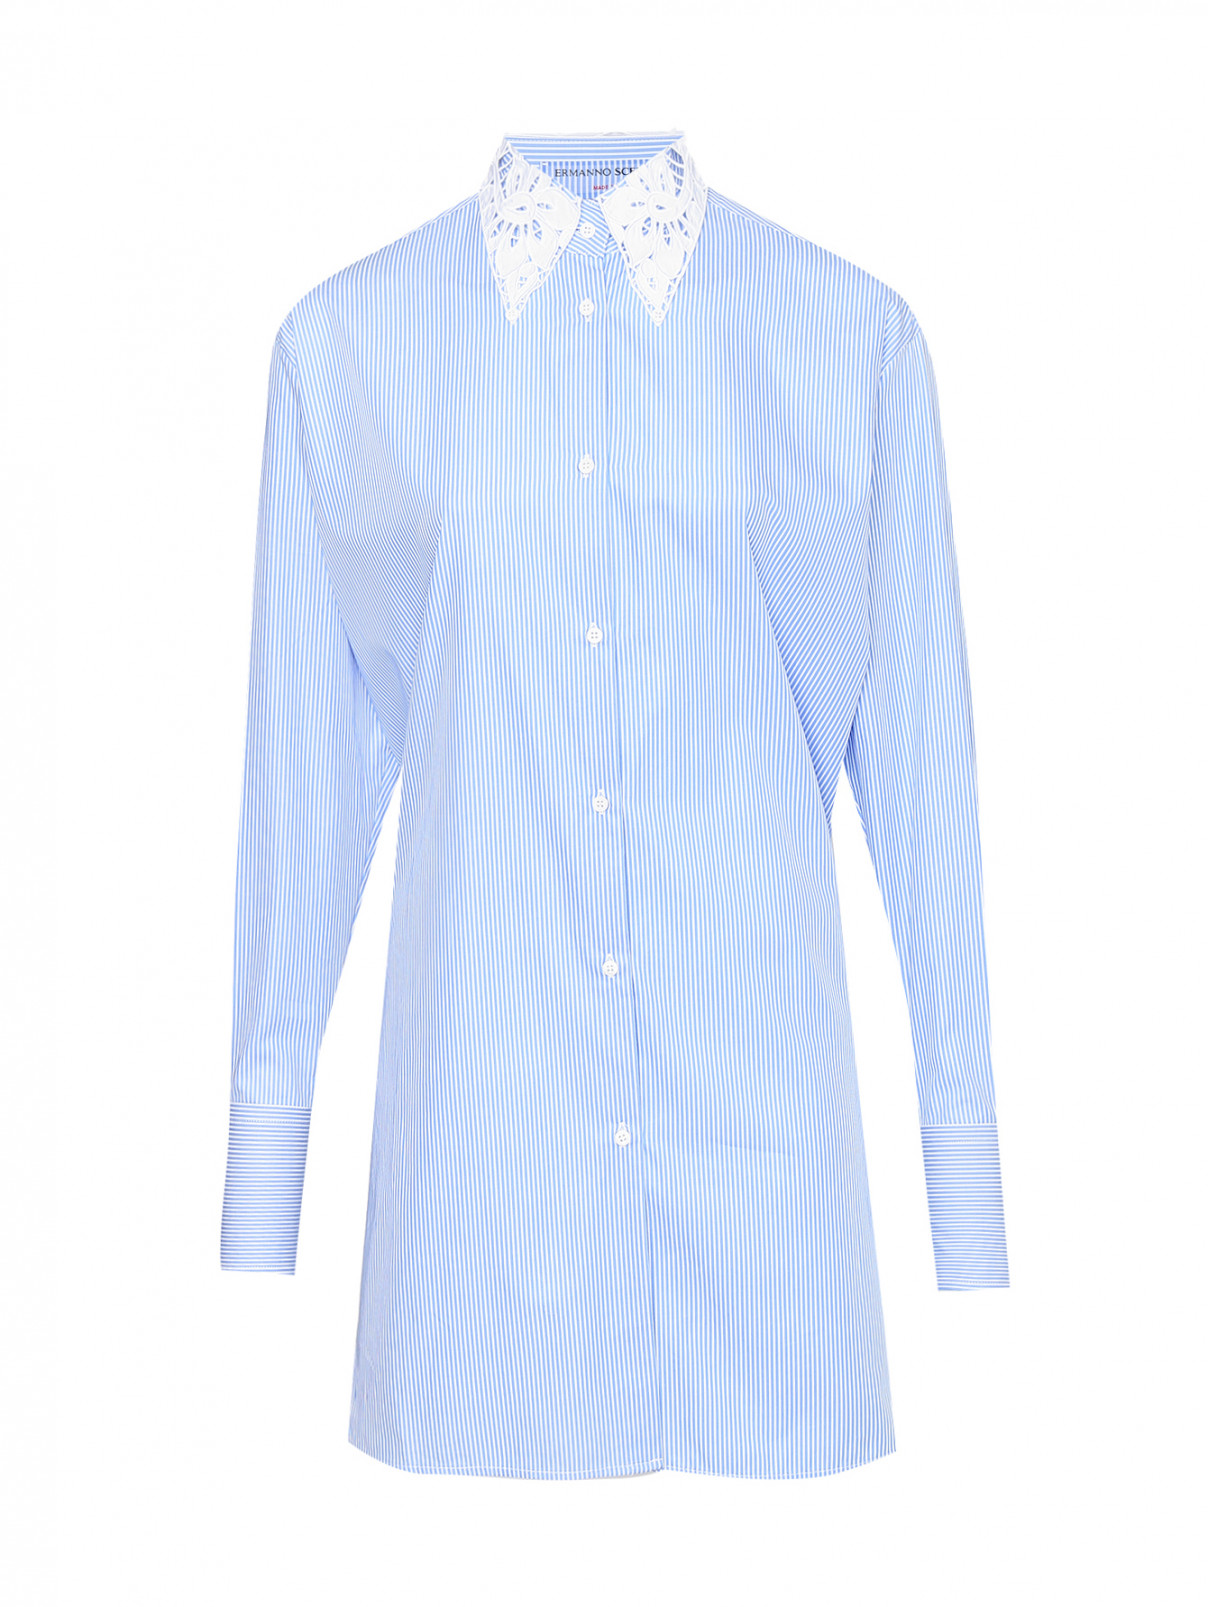 Рубашка из хлопка в полоску Ermanno Scervino  –  Общий вид  – Цвет:  Синий